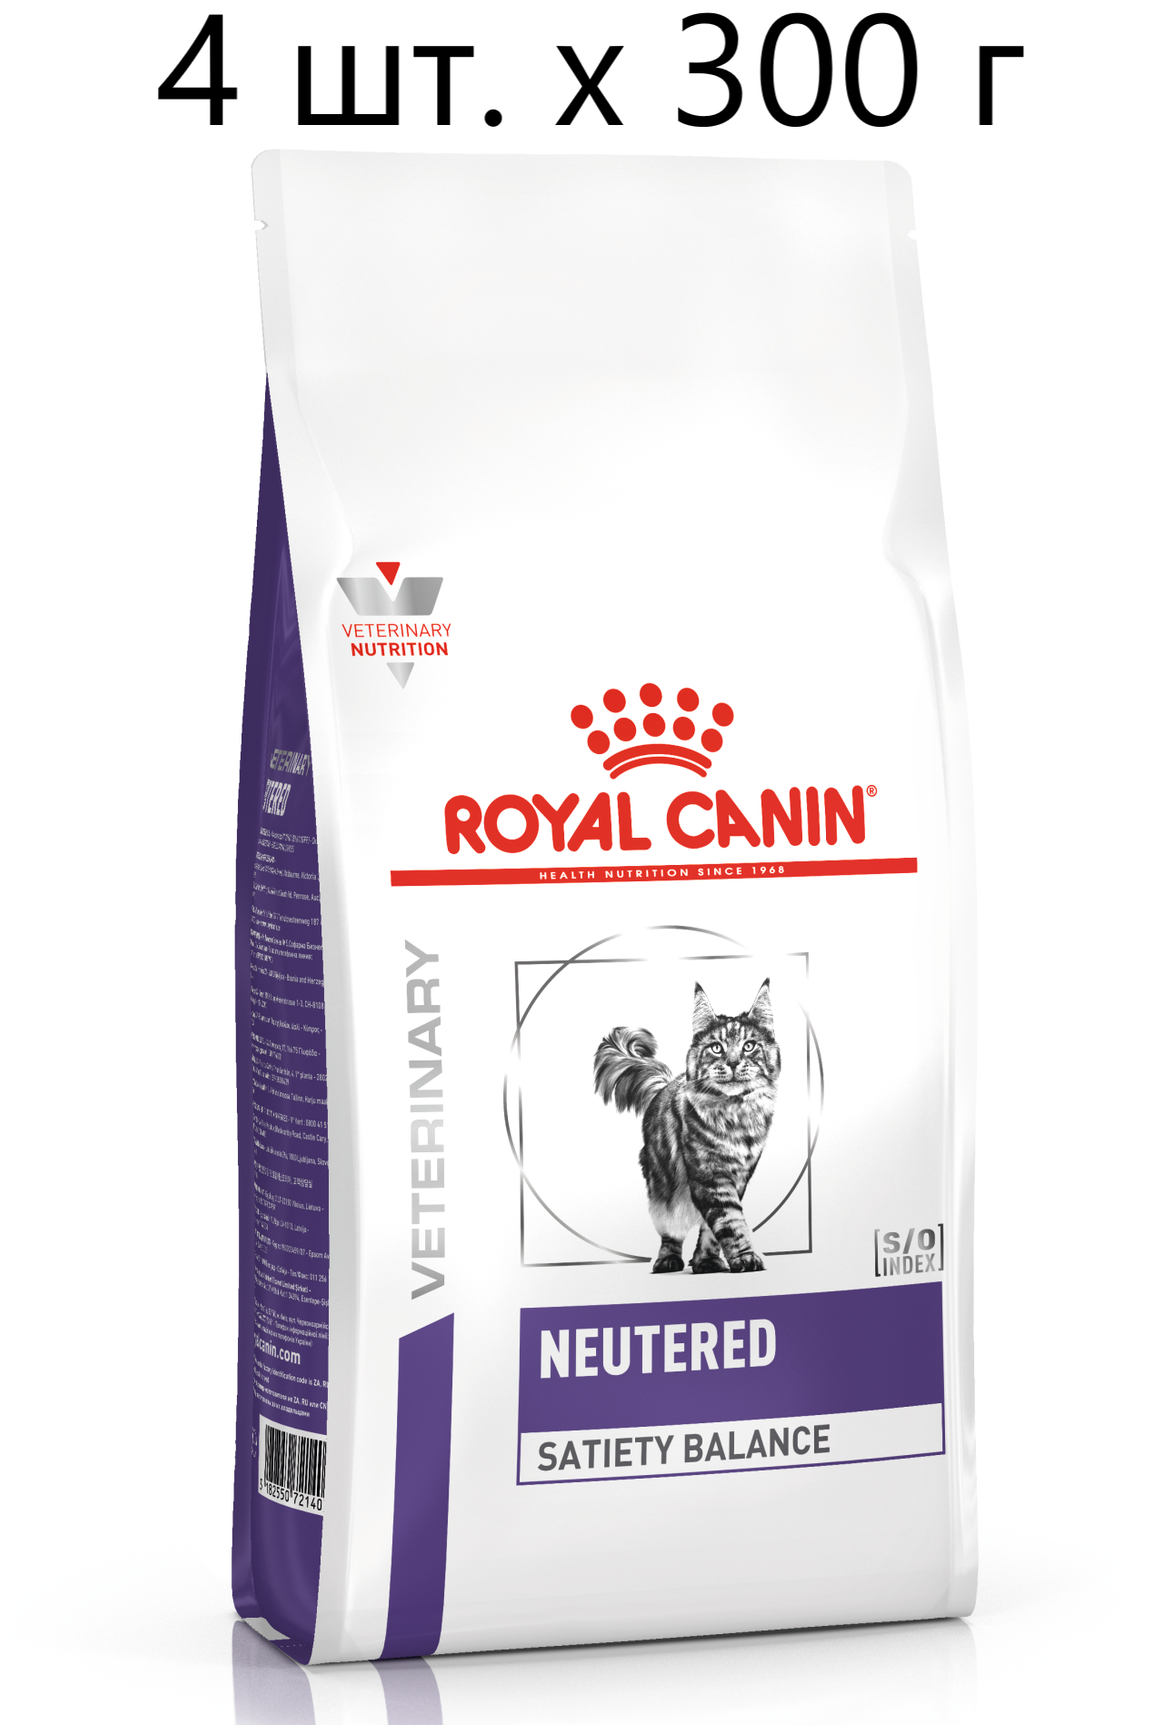 Сухой корм для стерилизованных кошек ROYAL CANIN NEUTERED SATIETY BALANCE, профилактика избыточного веса, 4 шт. х 300 г